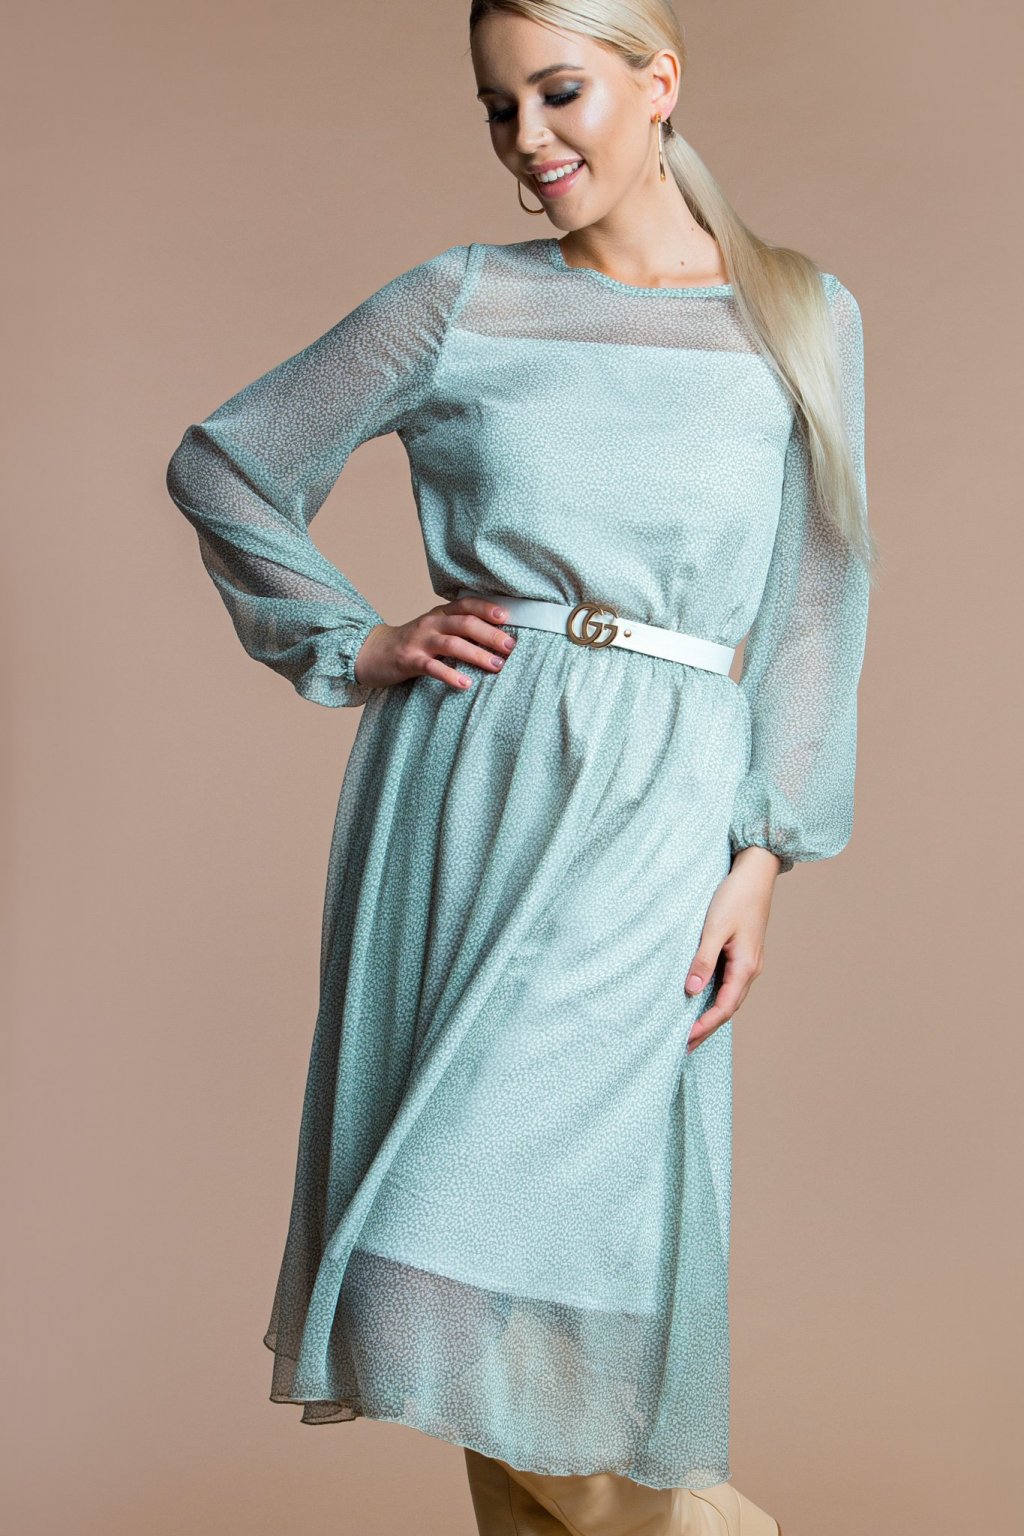 Платье Белучче из шифона П-209-1 - 6